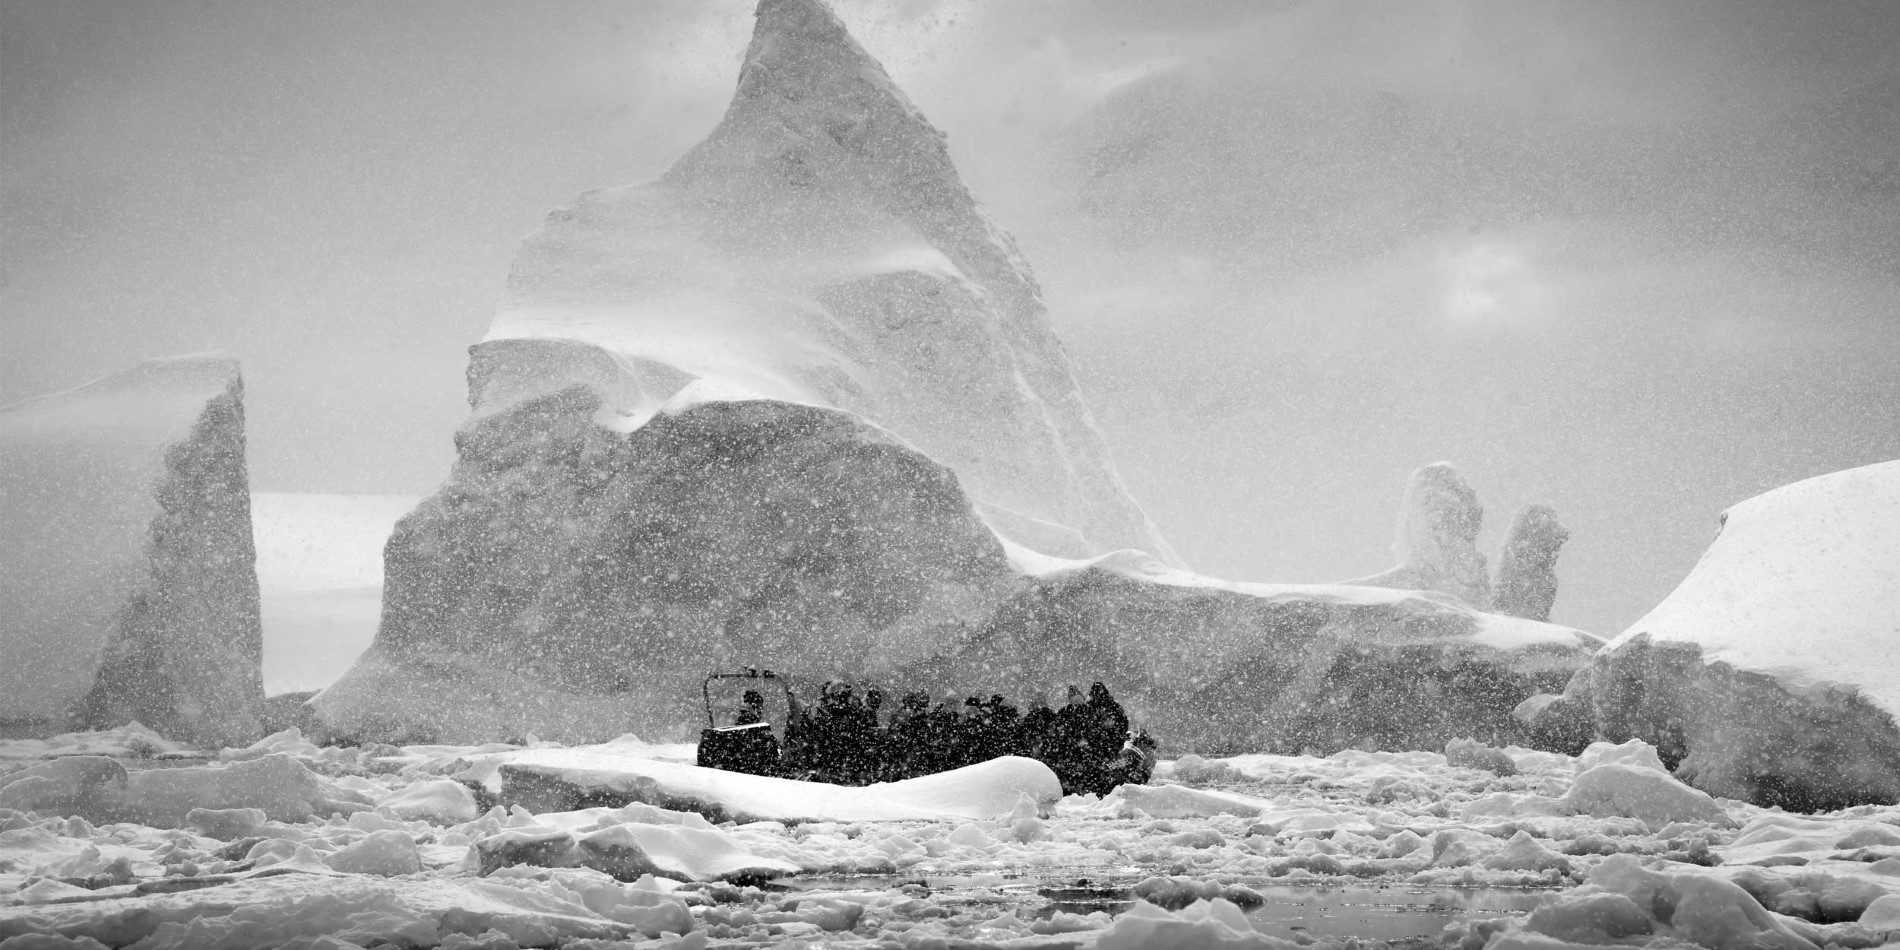 Cruising through the icebergs in Antarctica